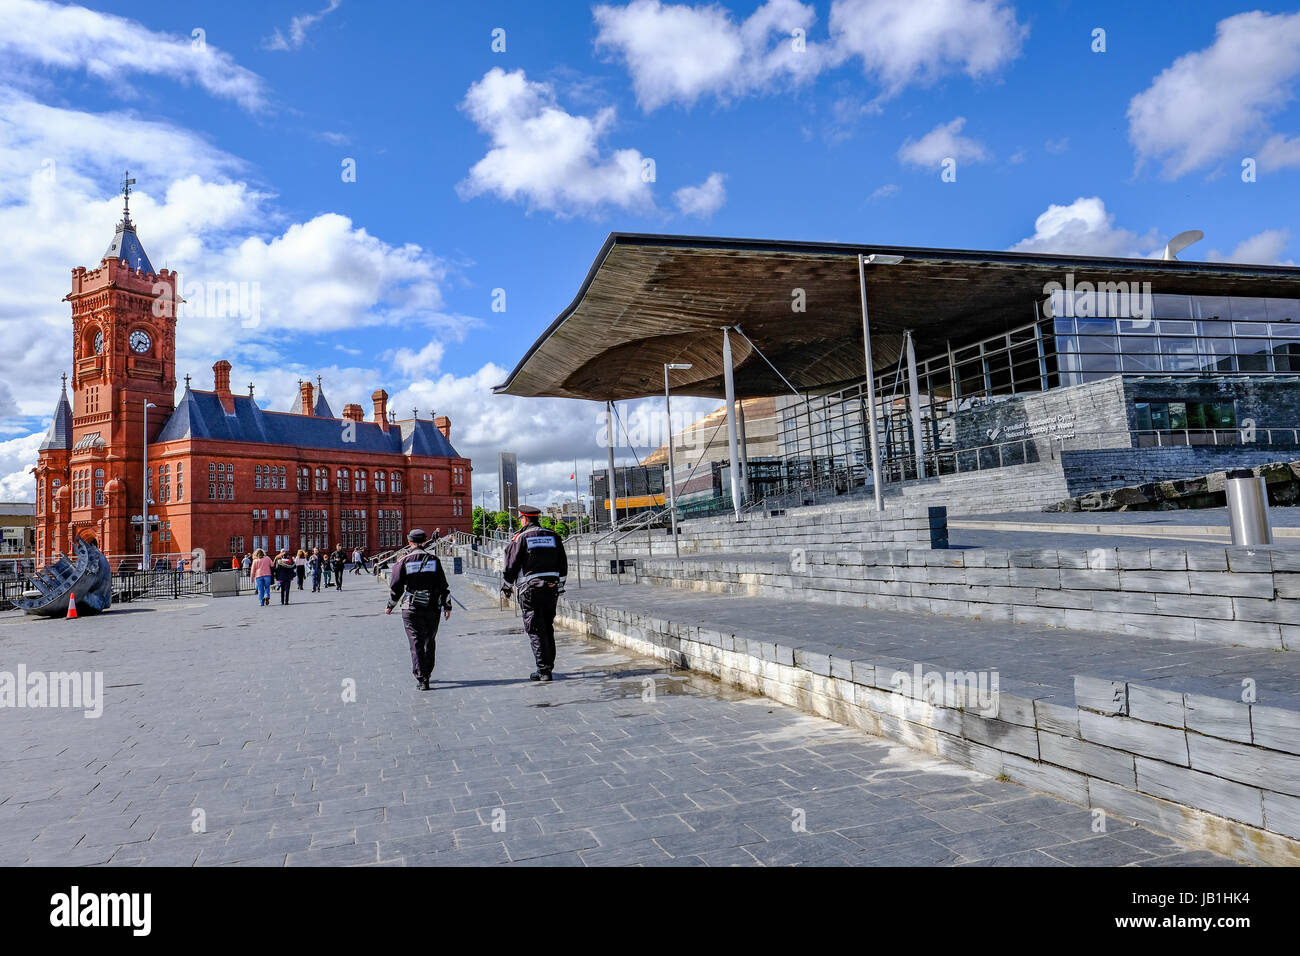 Bucht von Cardiff, Cardiff, Wales - 20. Mai 2017: Sinedd, Gebäude der Nationalversammlung und Pierhead Builidng.  Welsh Regierungsgebäude mit Gemeinschaft Polic Stockfoto